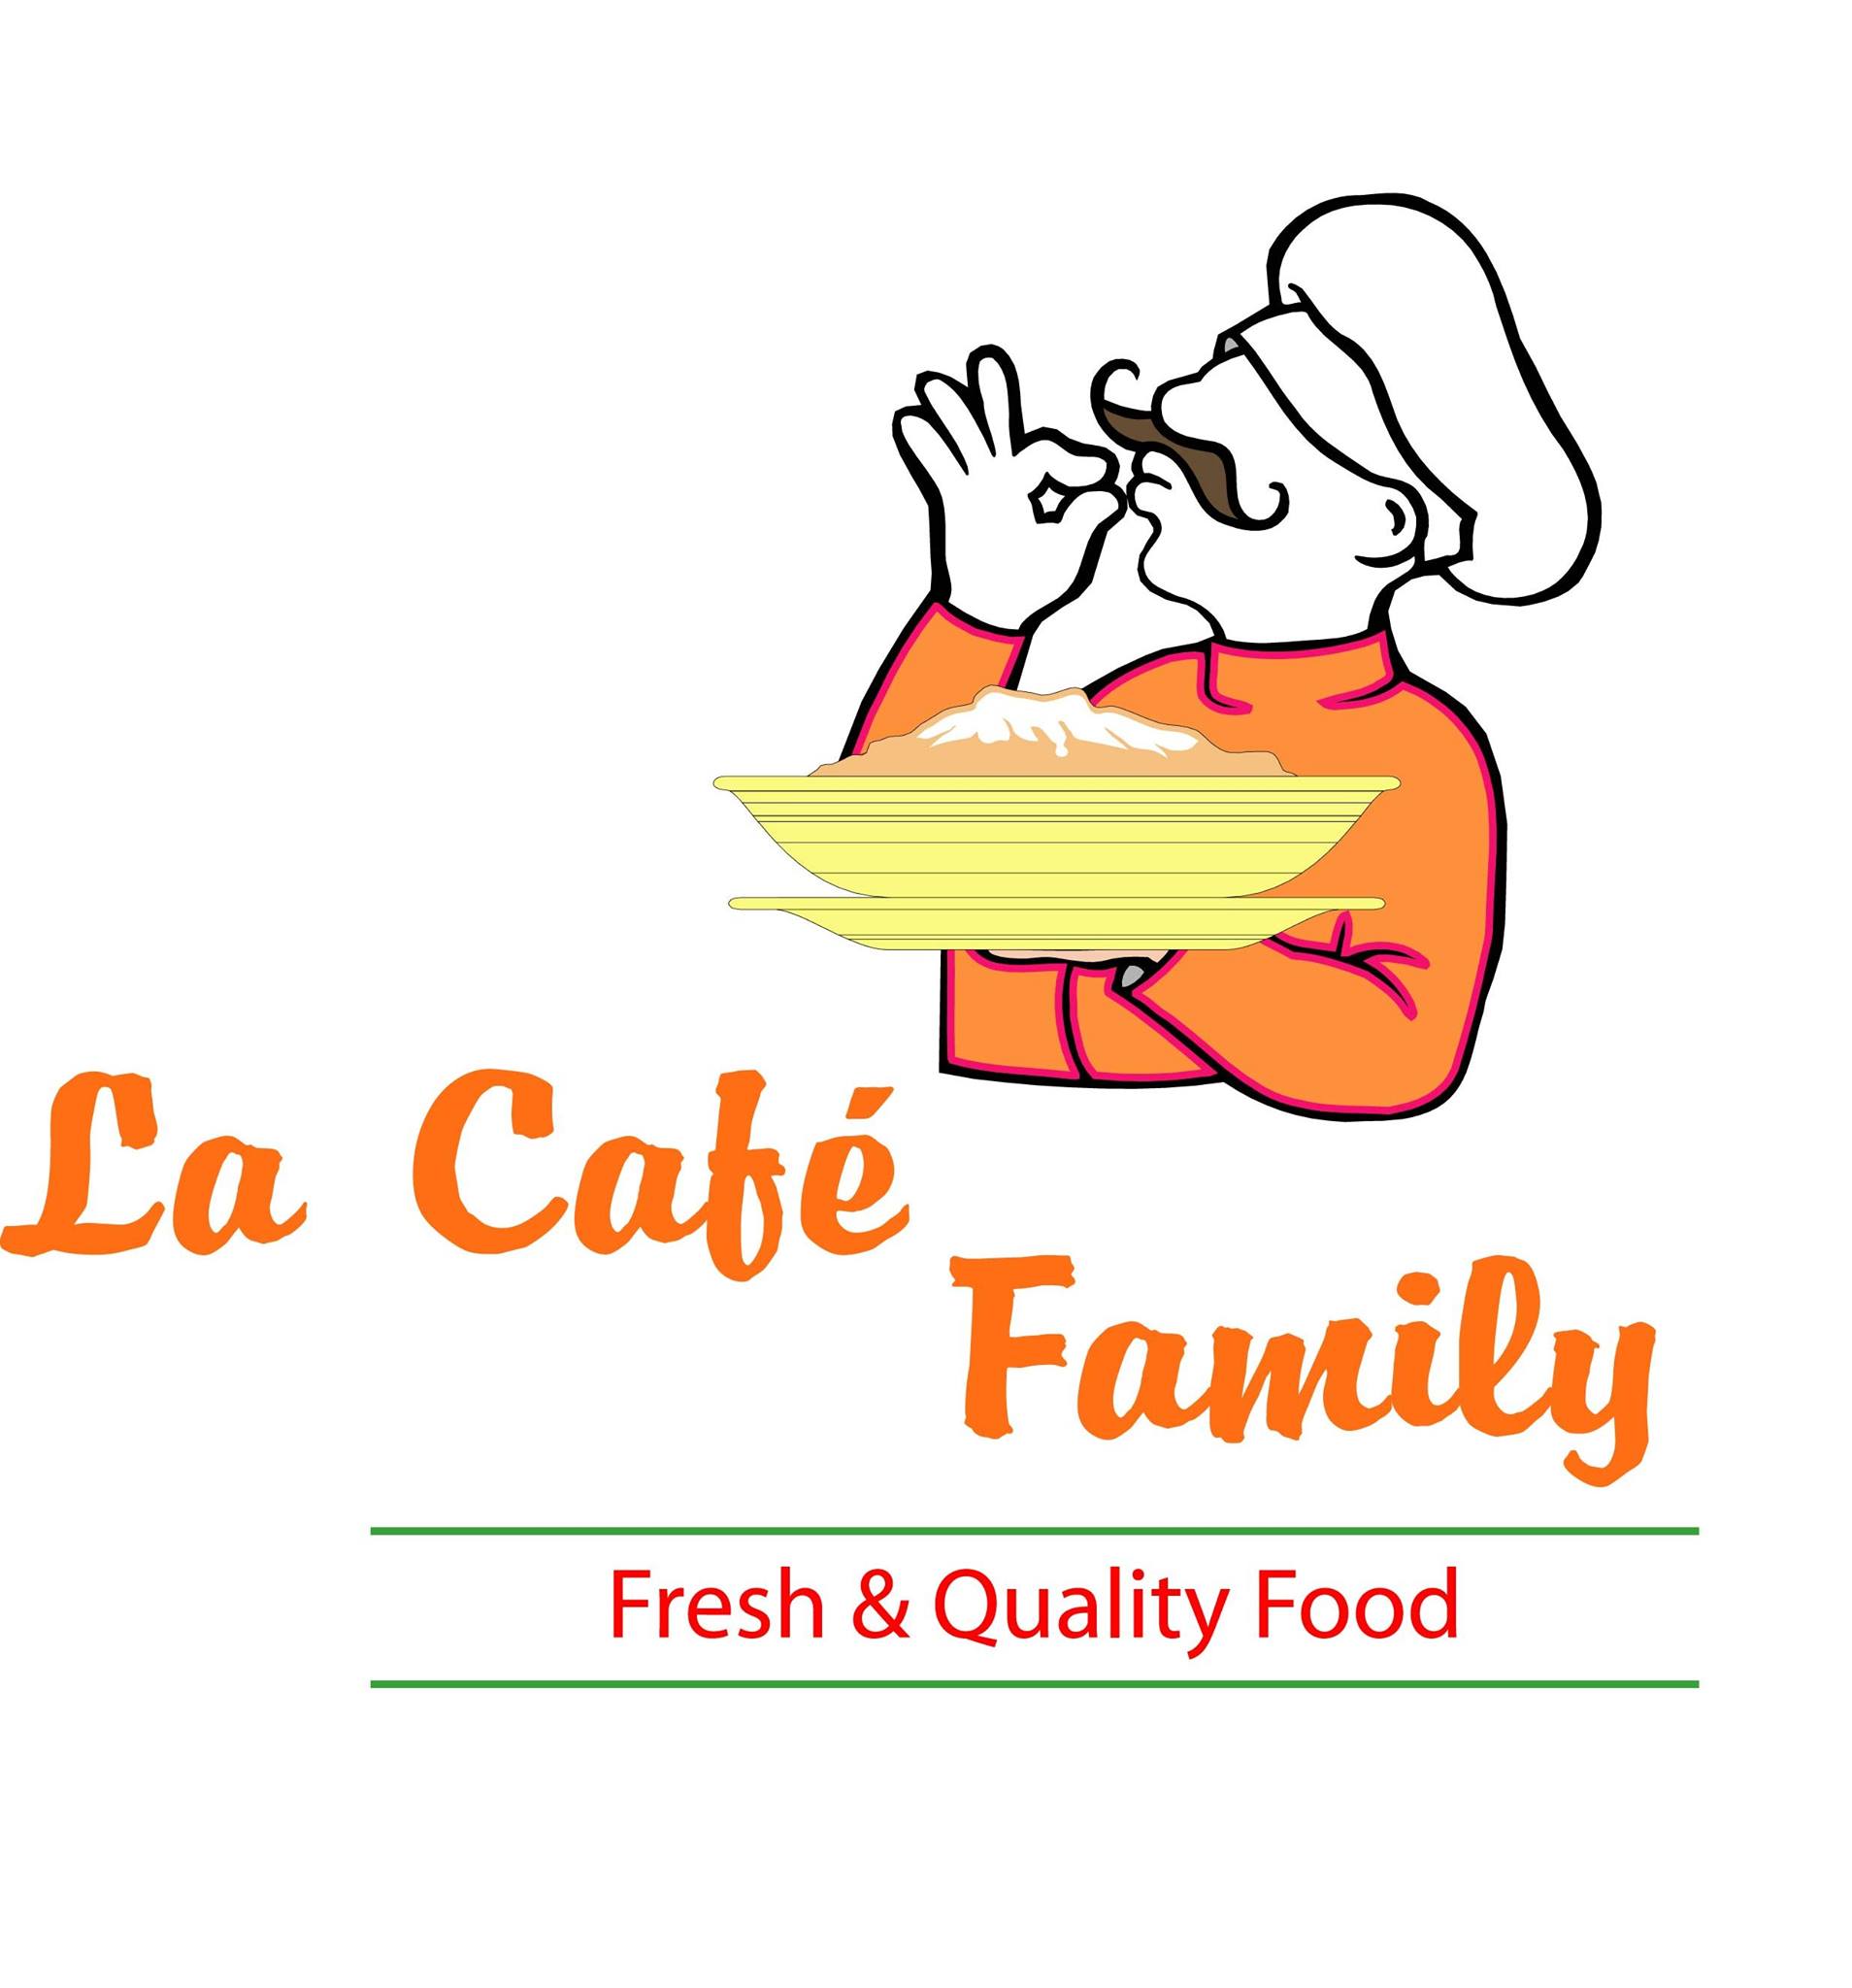 LA CAFE FAMILY